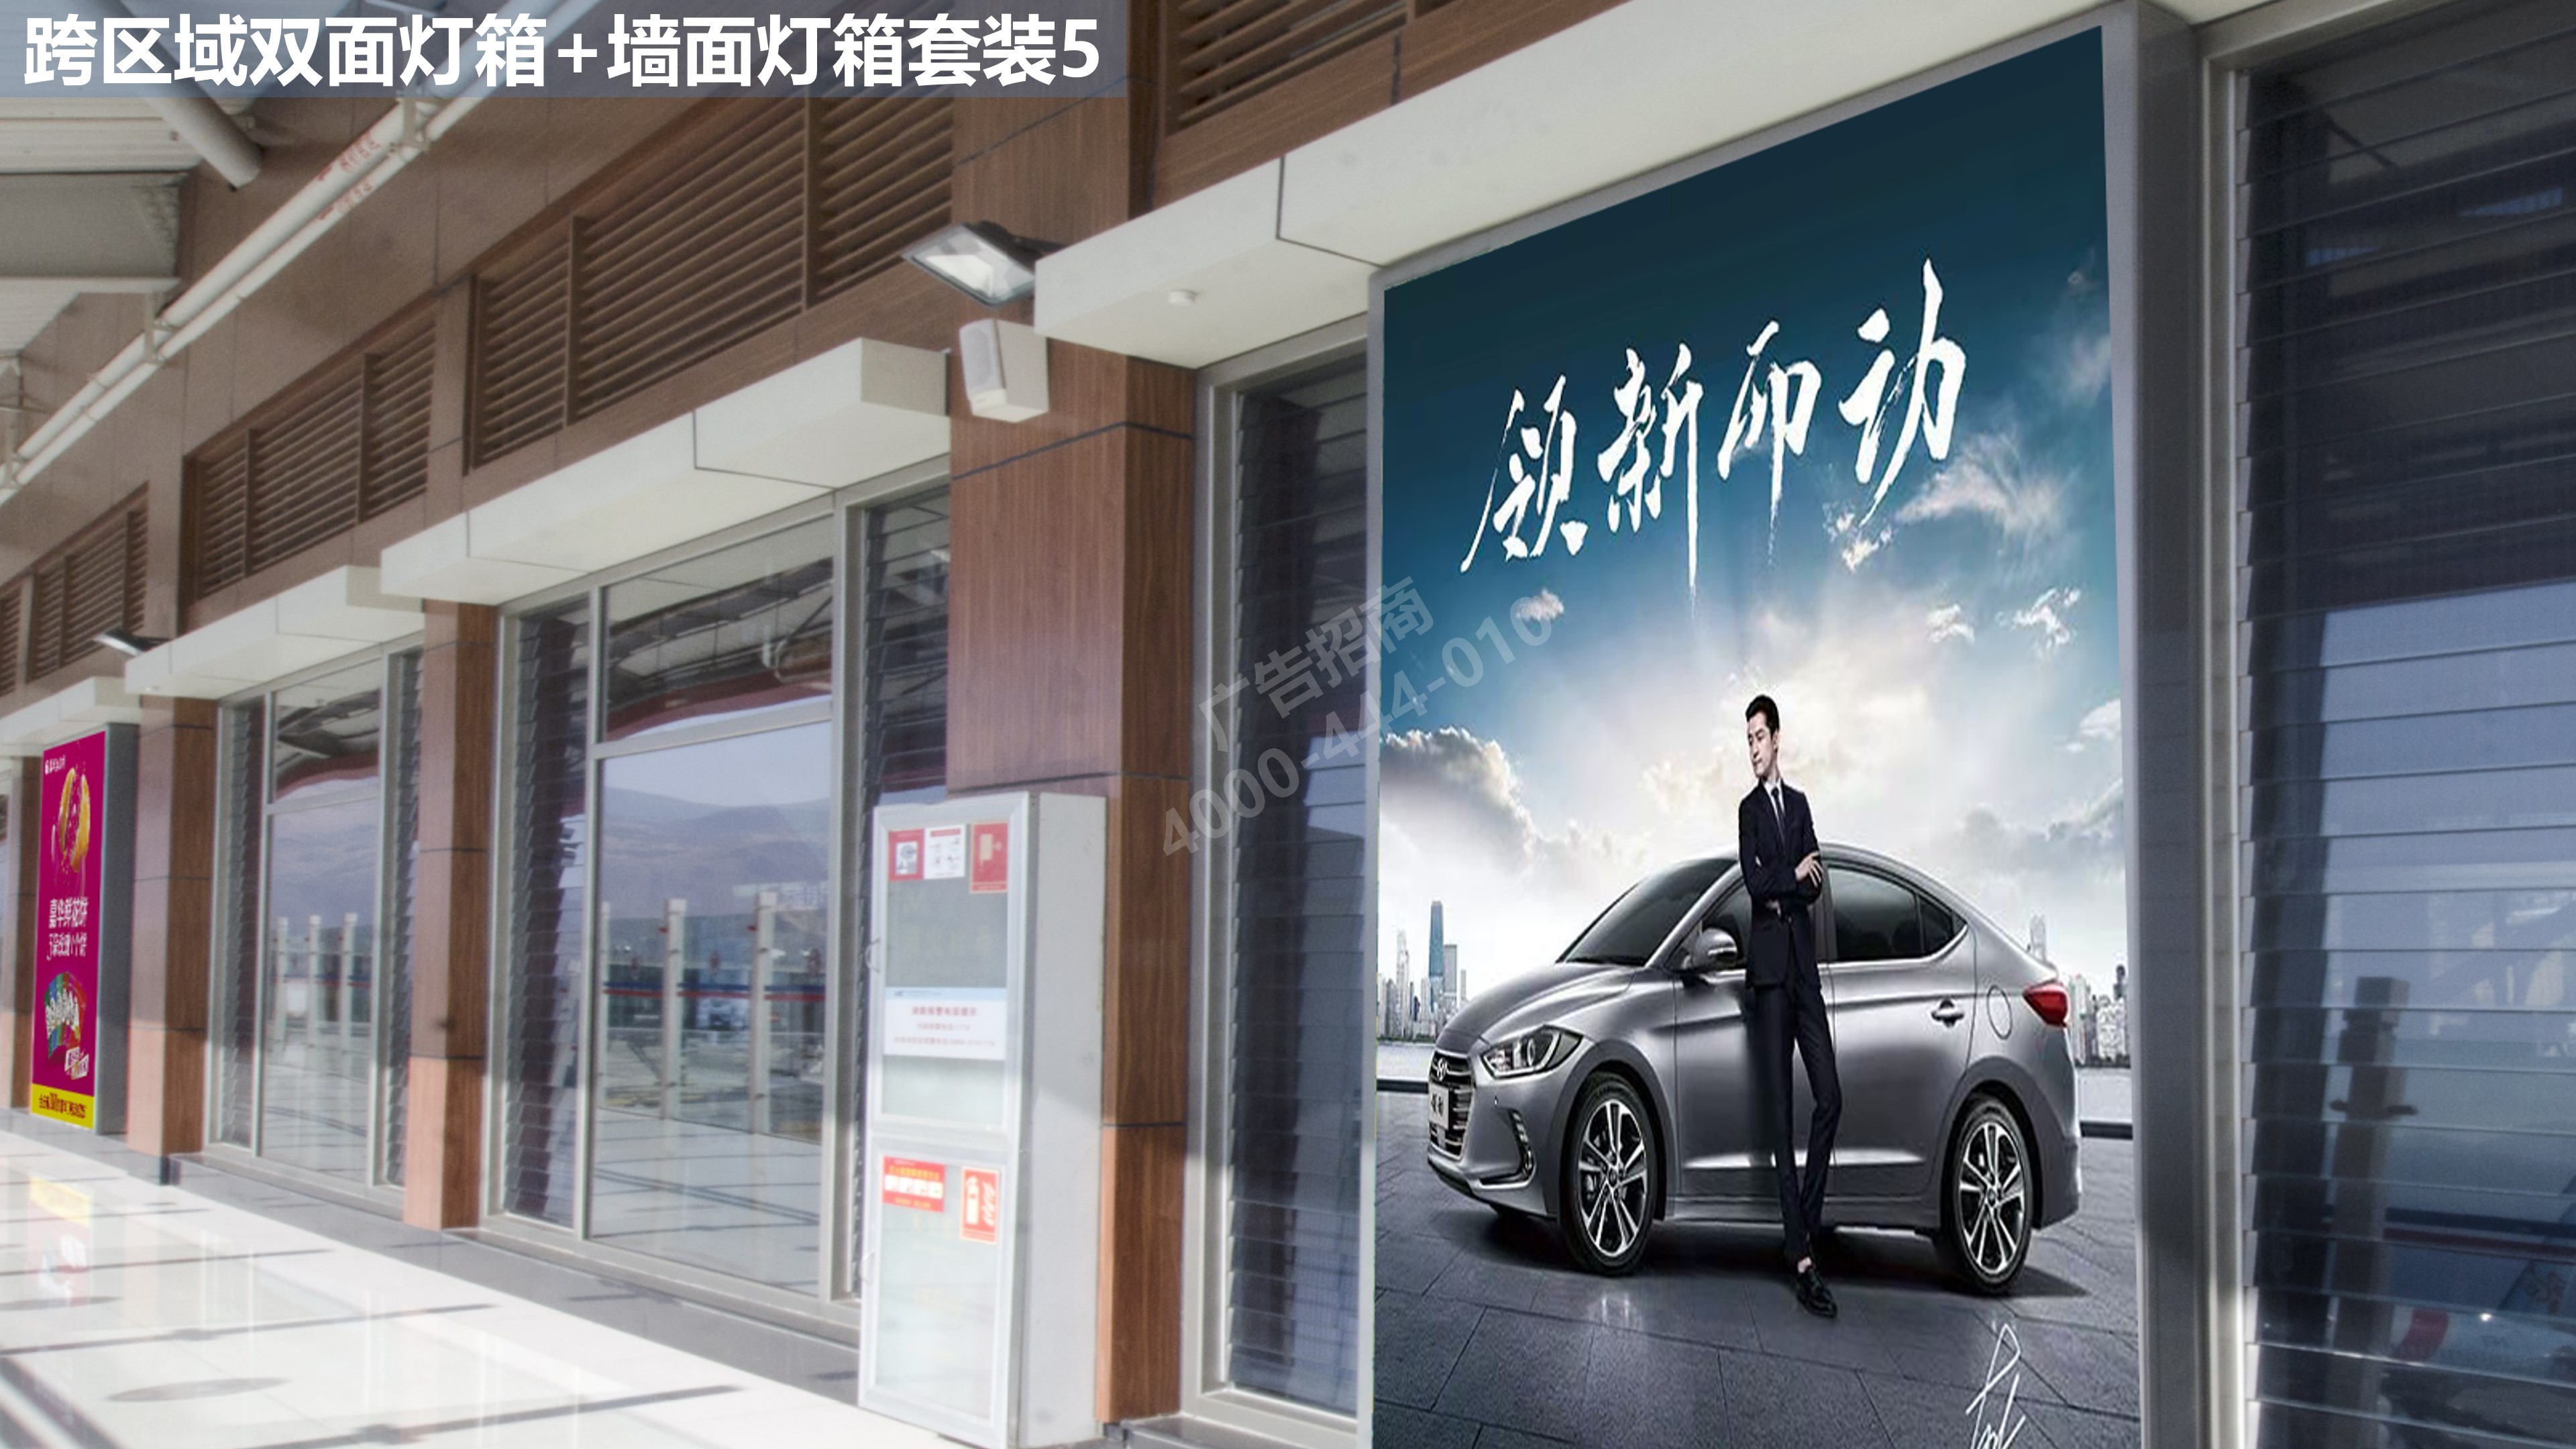 丽江机场跨区域候机广告5